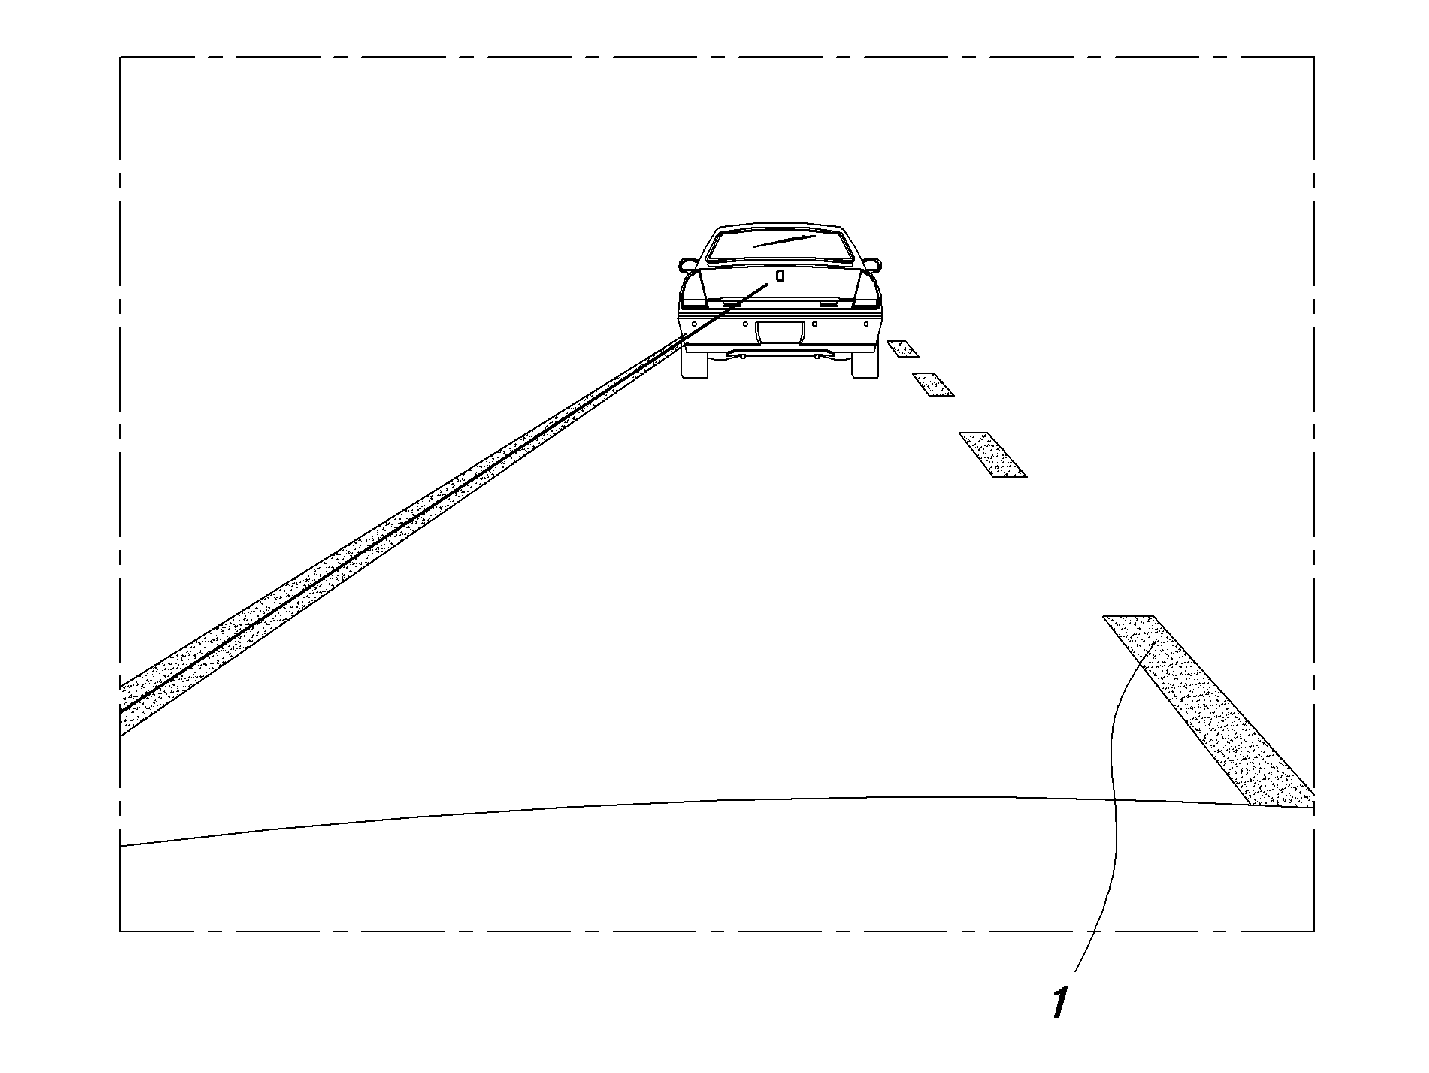 Lane departure warning method and system using virtual lane-dividing line